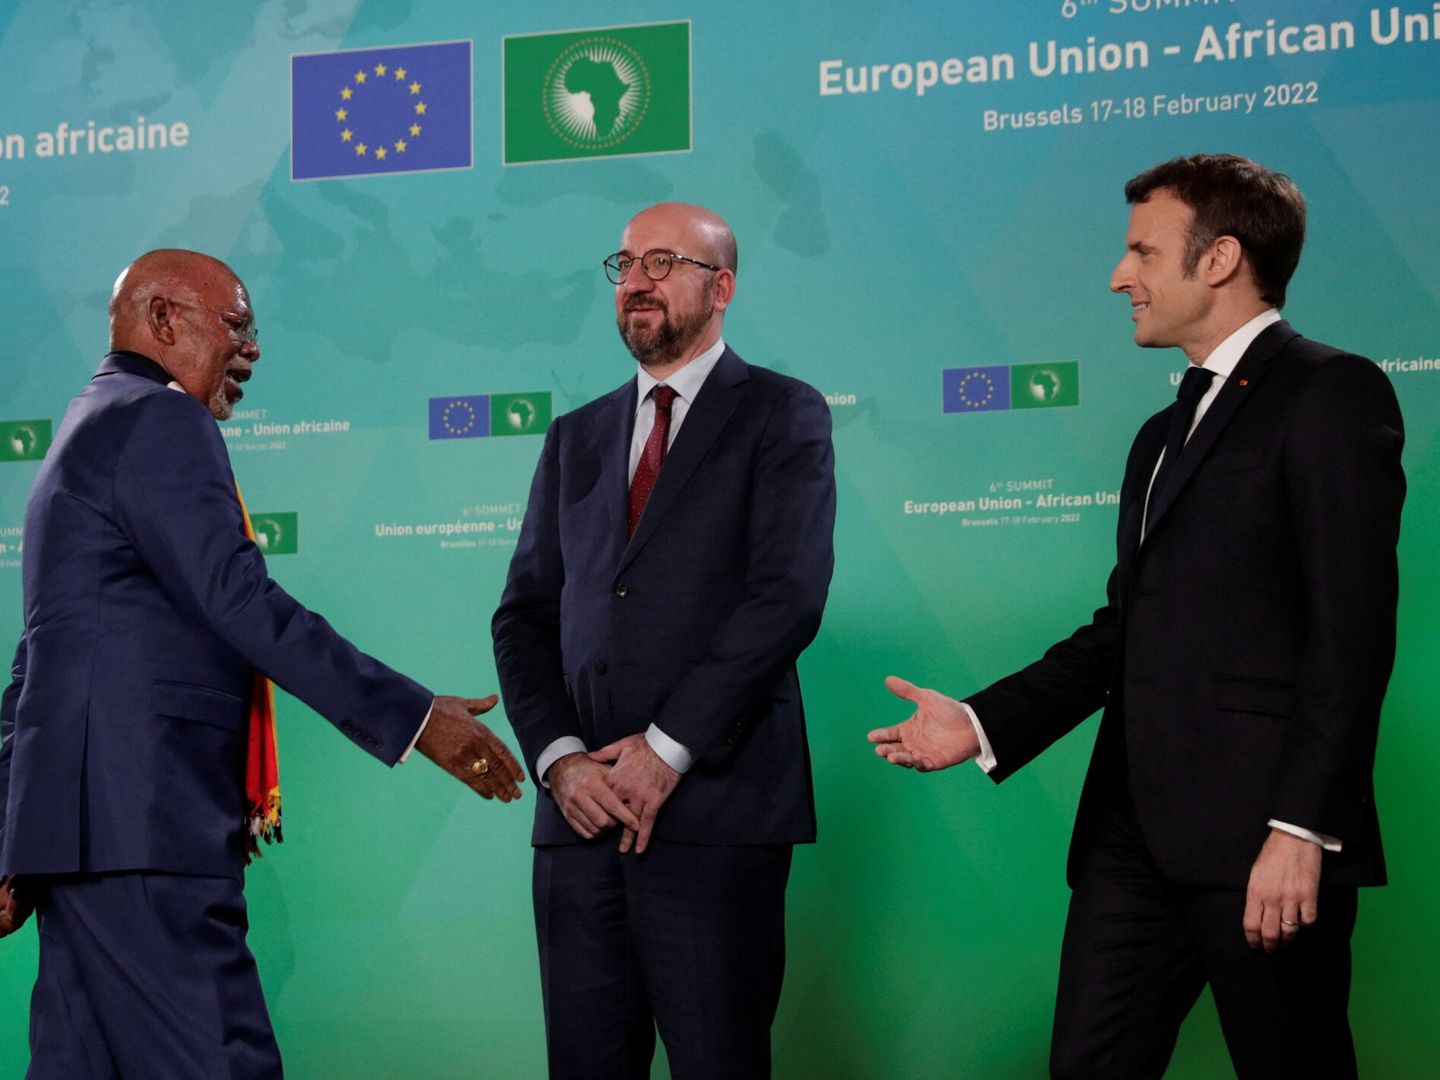 El ministro de Asuntos Exteriores de Uganda, Odongo Jeje Abubakhar, durante la cumbre entre la Unión Europea y la Unión Africana en Bruselas, Bélgica. (Reuters/Pool/Olivier Hoslet)